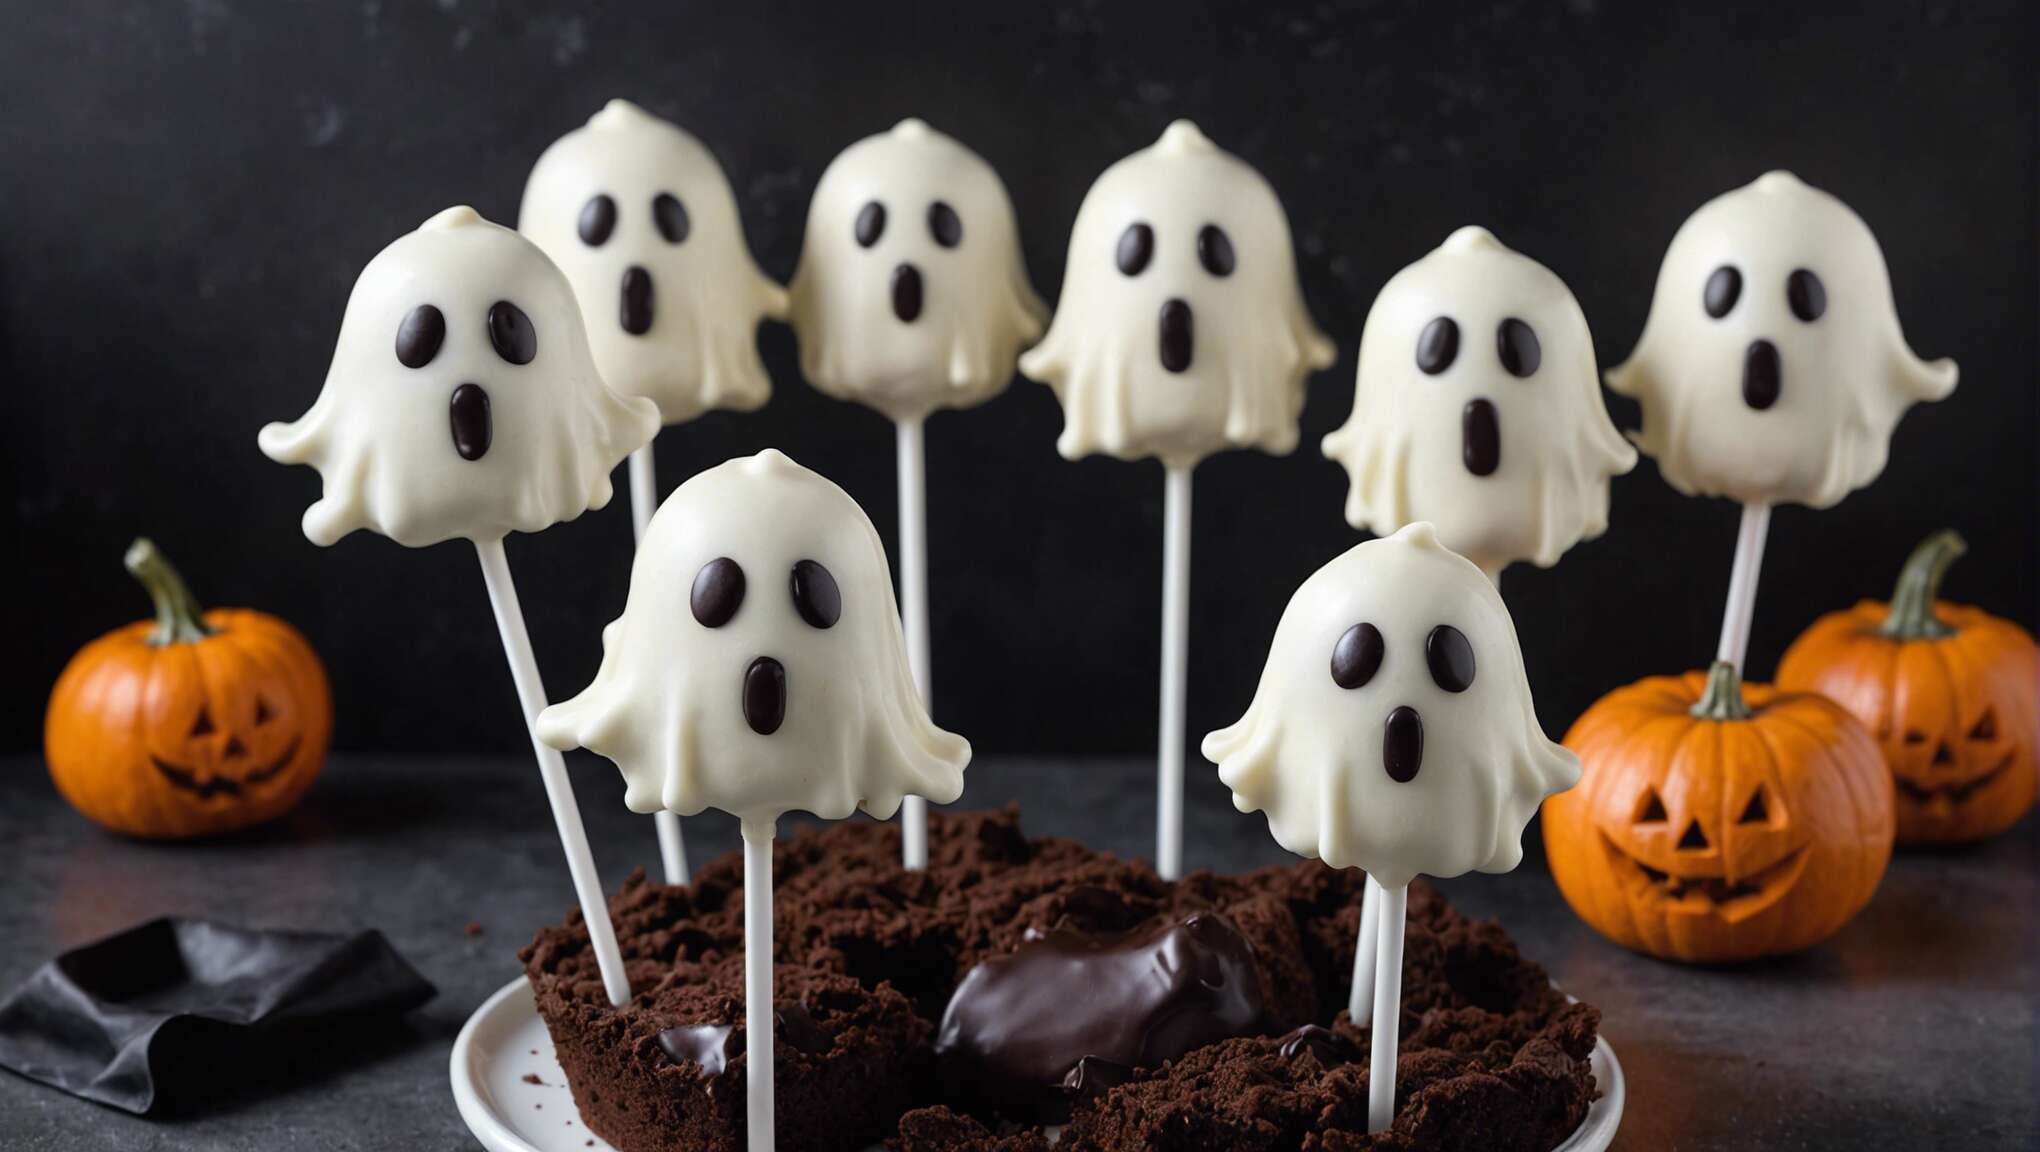 Comment réaliser des cake pops fantômes pour un Halloween gourmand et original ?